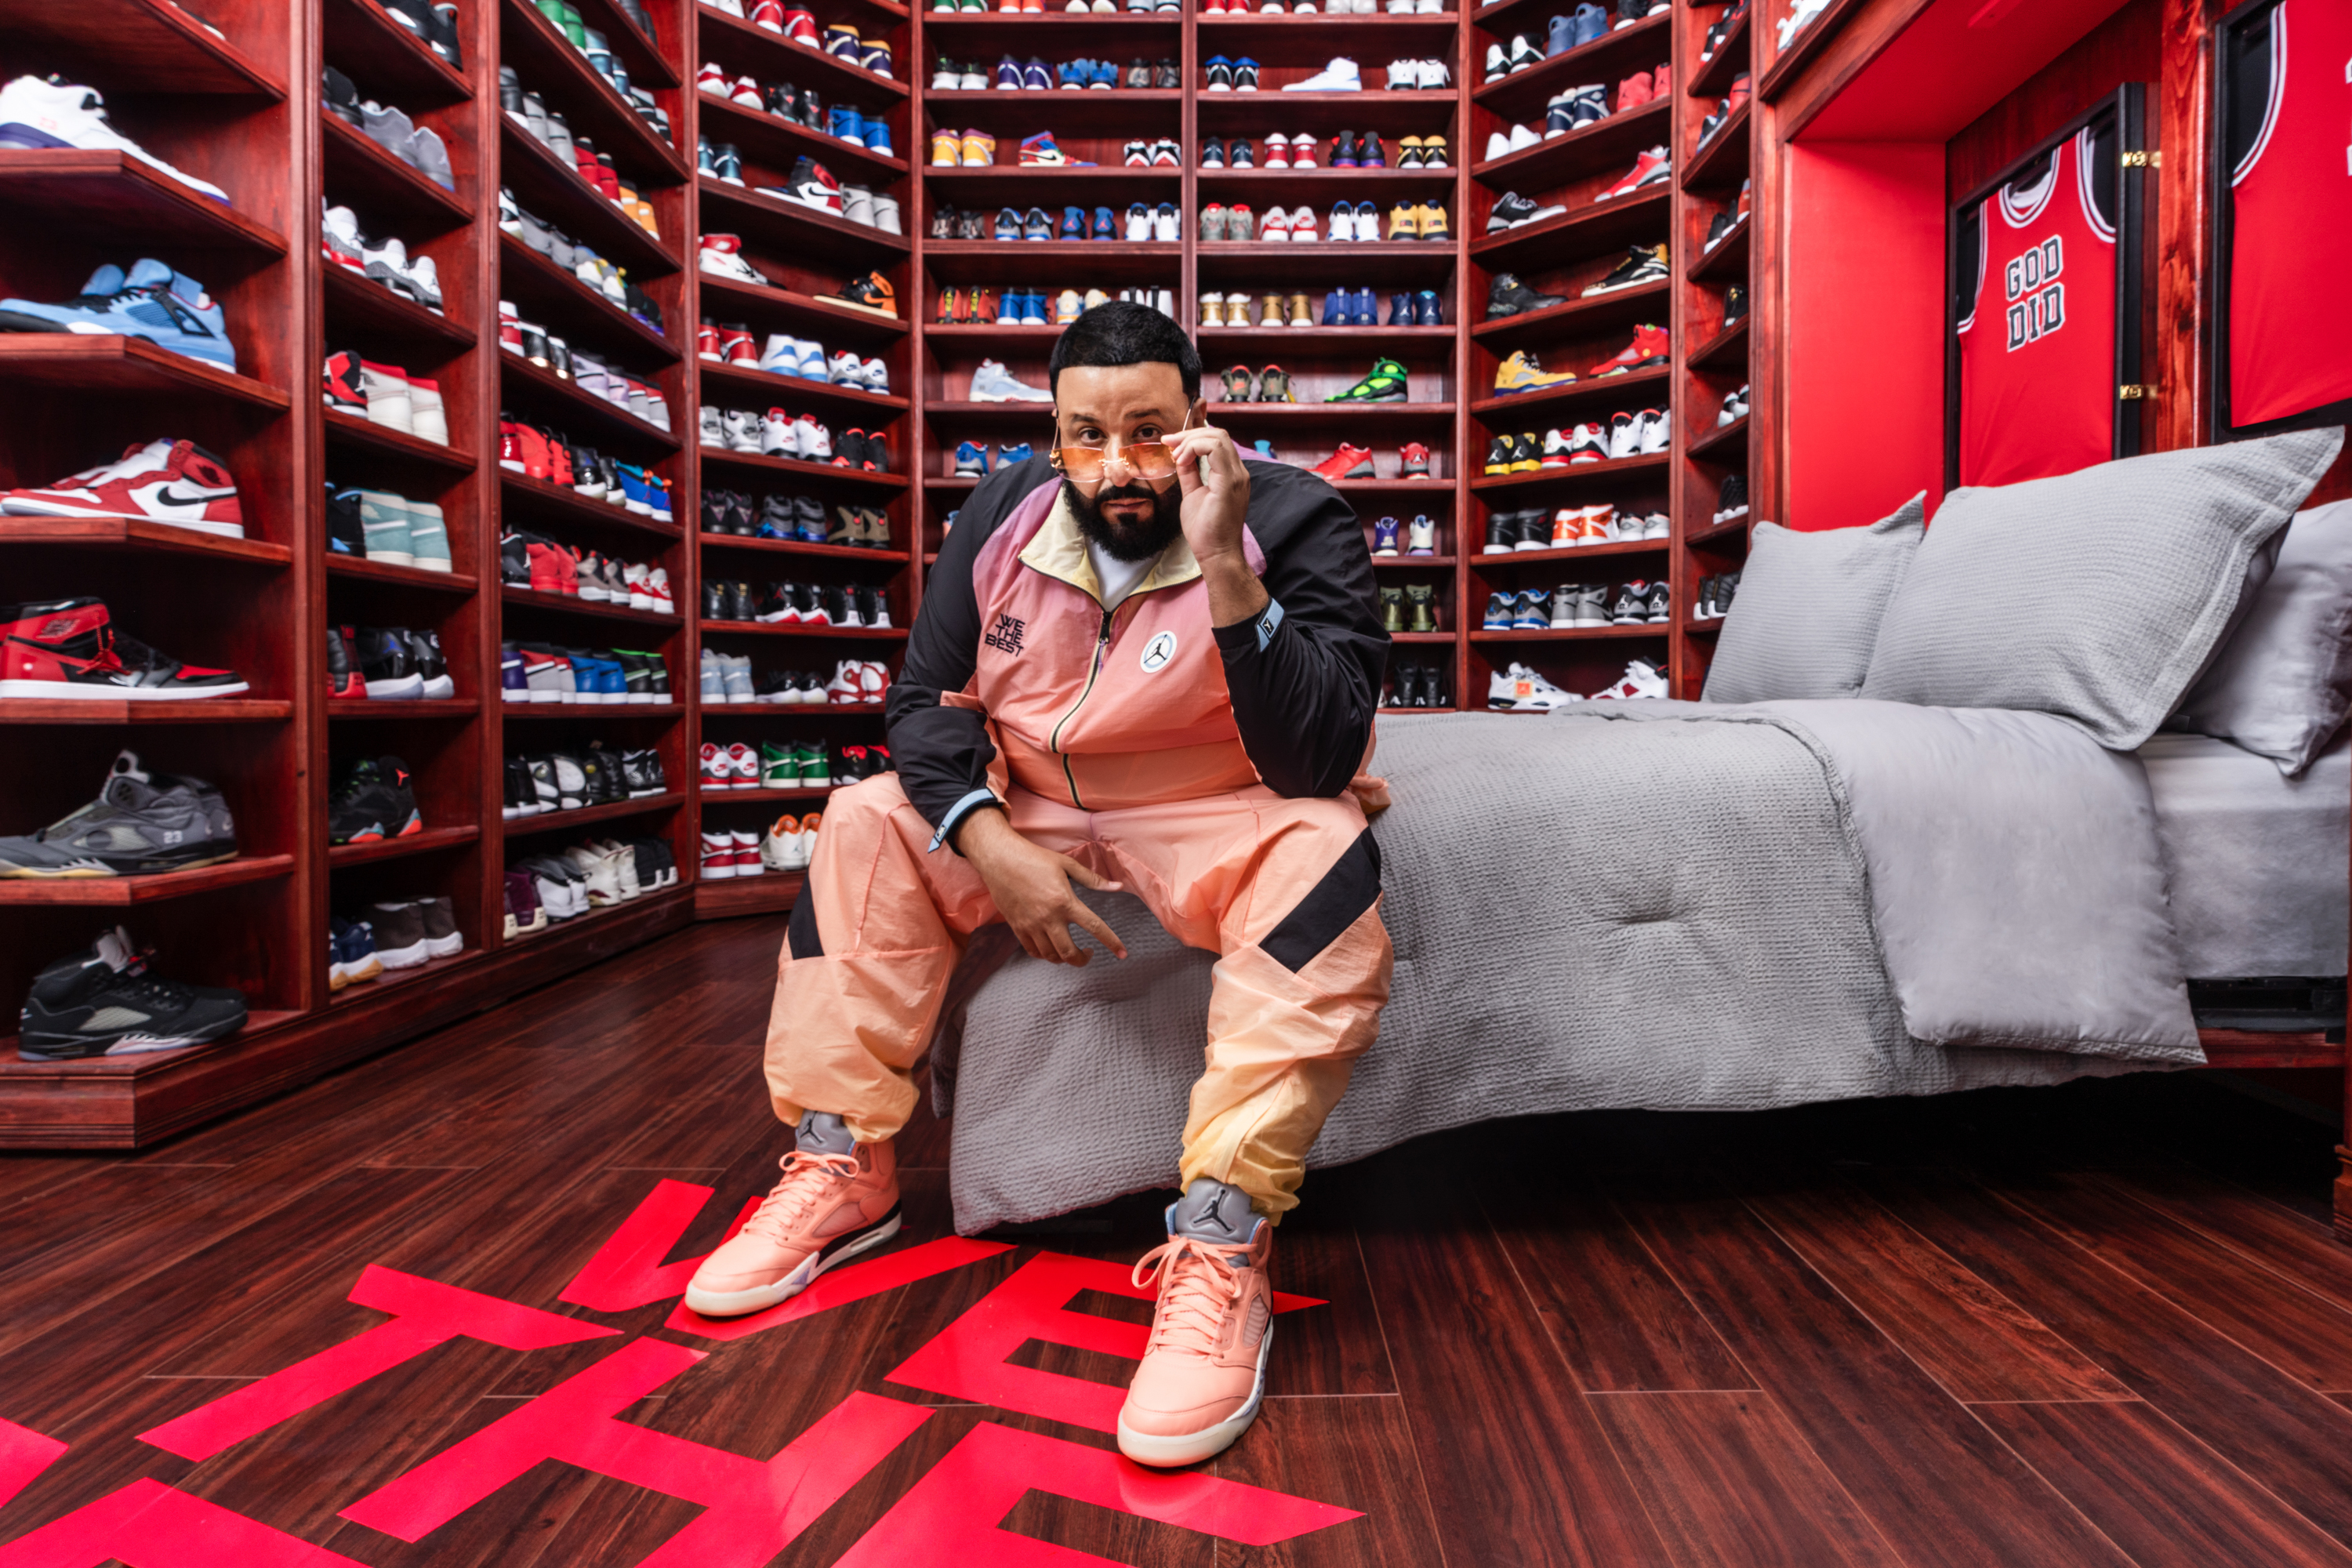 Get DJ Khaled's Shoe Closet & Son Asahd's Slick 'Grateful' Suits